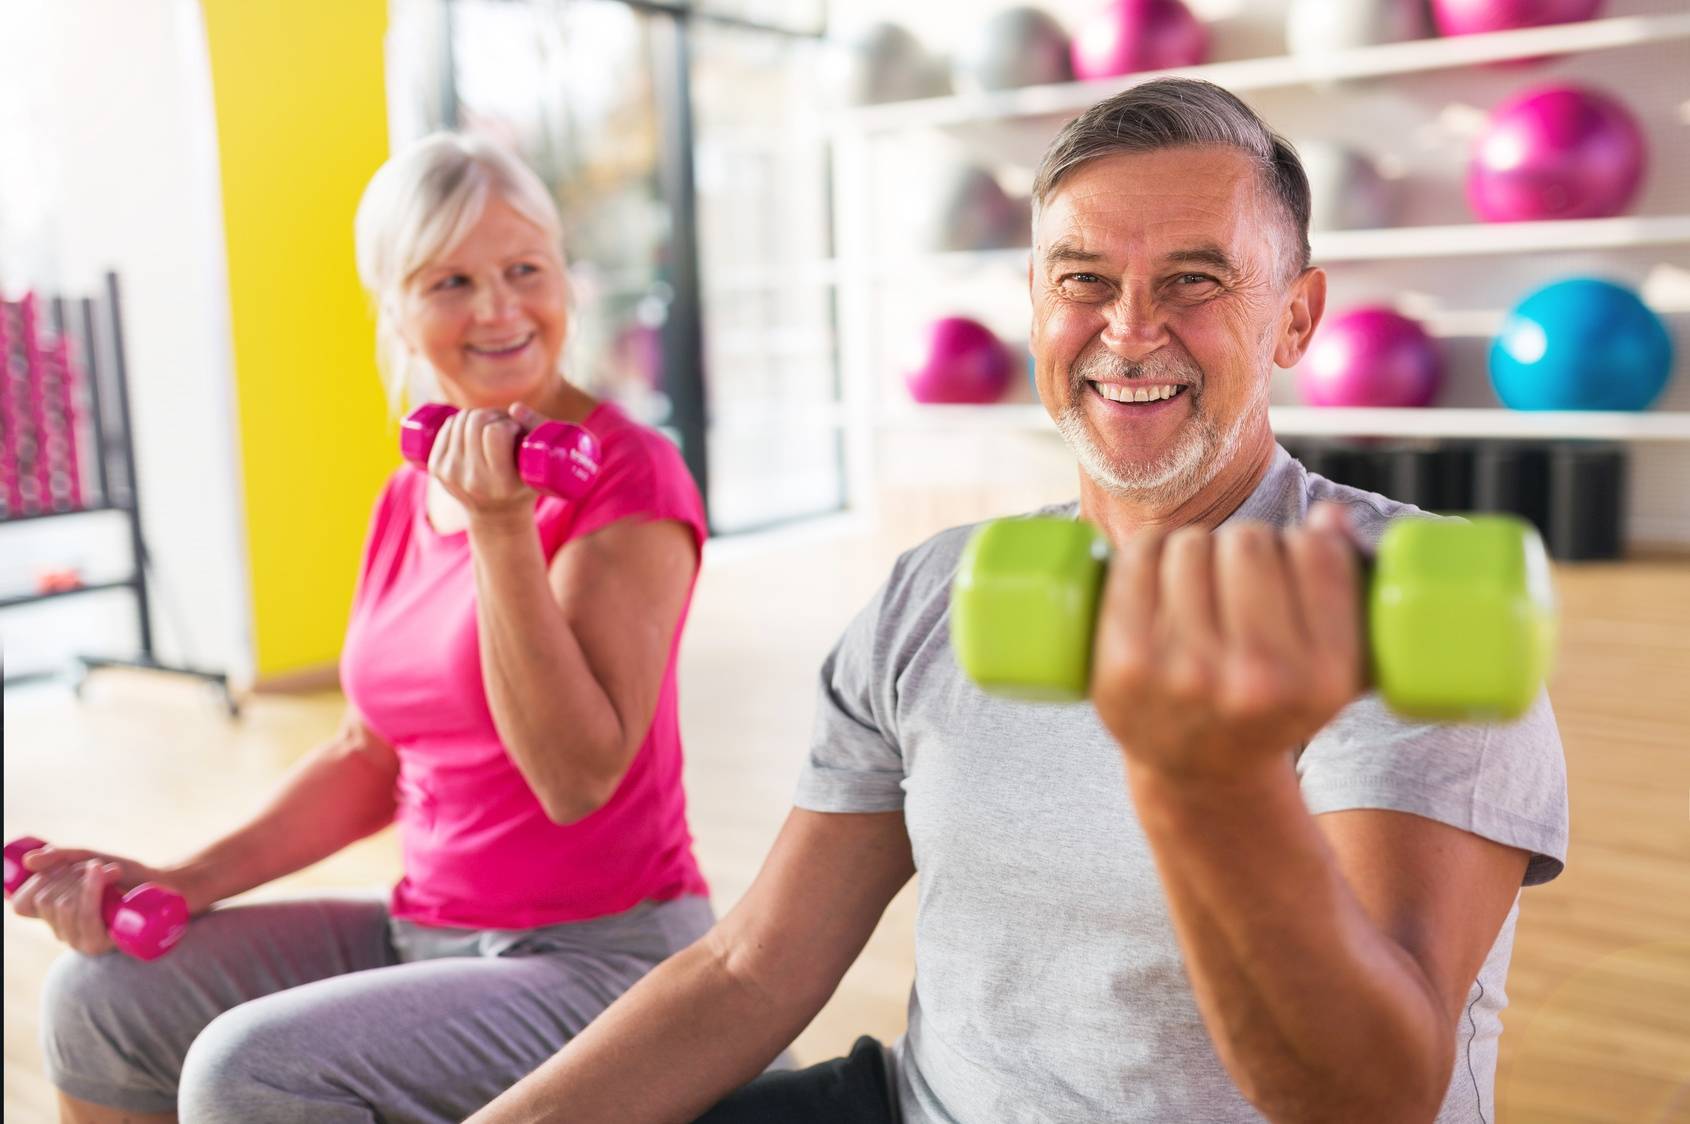 Jakie ćwiczenia dla seniorów będą najlepsze i jak ćwiczyć na siłowni, aby zachować zdrowie? Starszy mężczyzna i kobieta ćwiczą z ciężarkami.